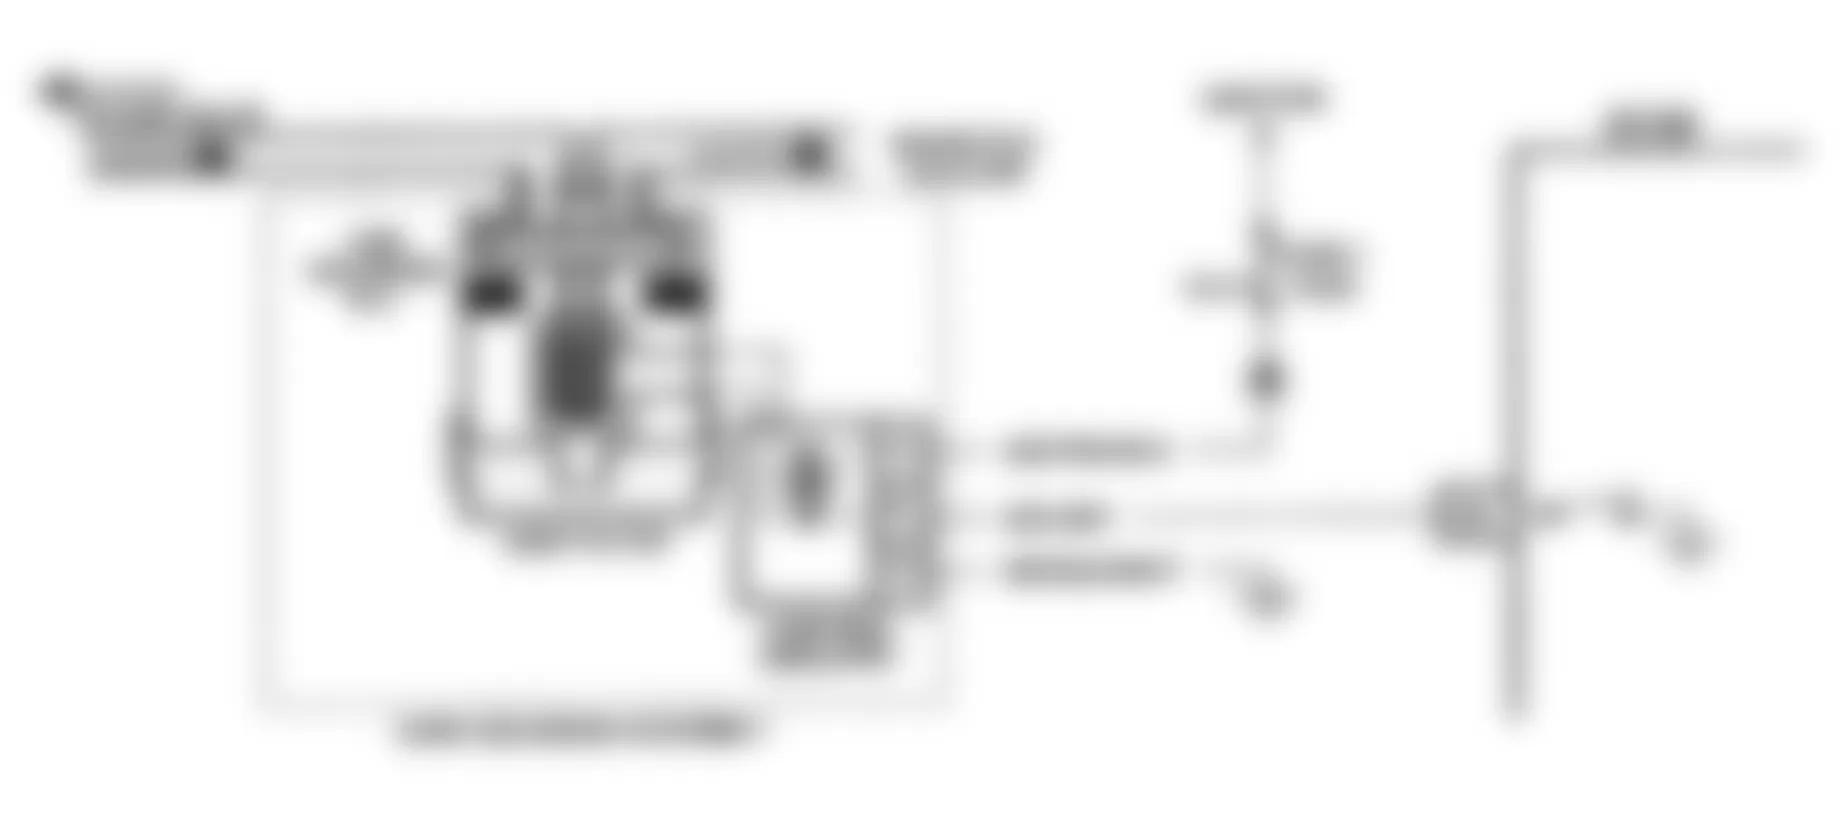 Chevrolet Lumina APV 1991 - Component Locations -  Code 32 Schematic (2.8L, 4.3L S & T Series & 7.4L) EGR System Error